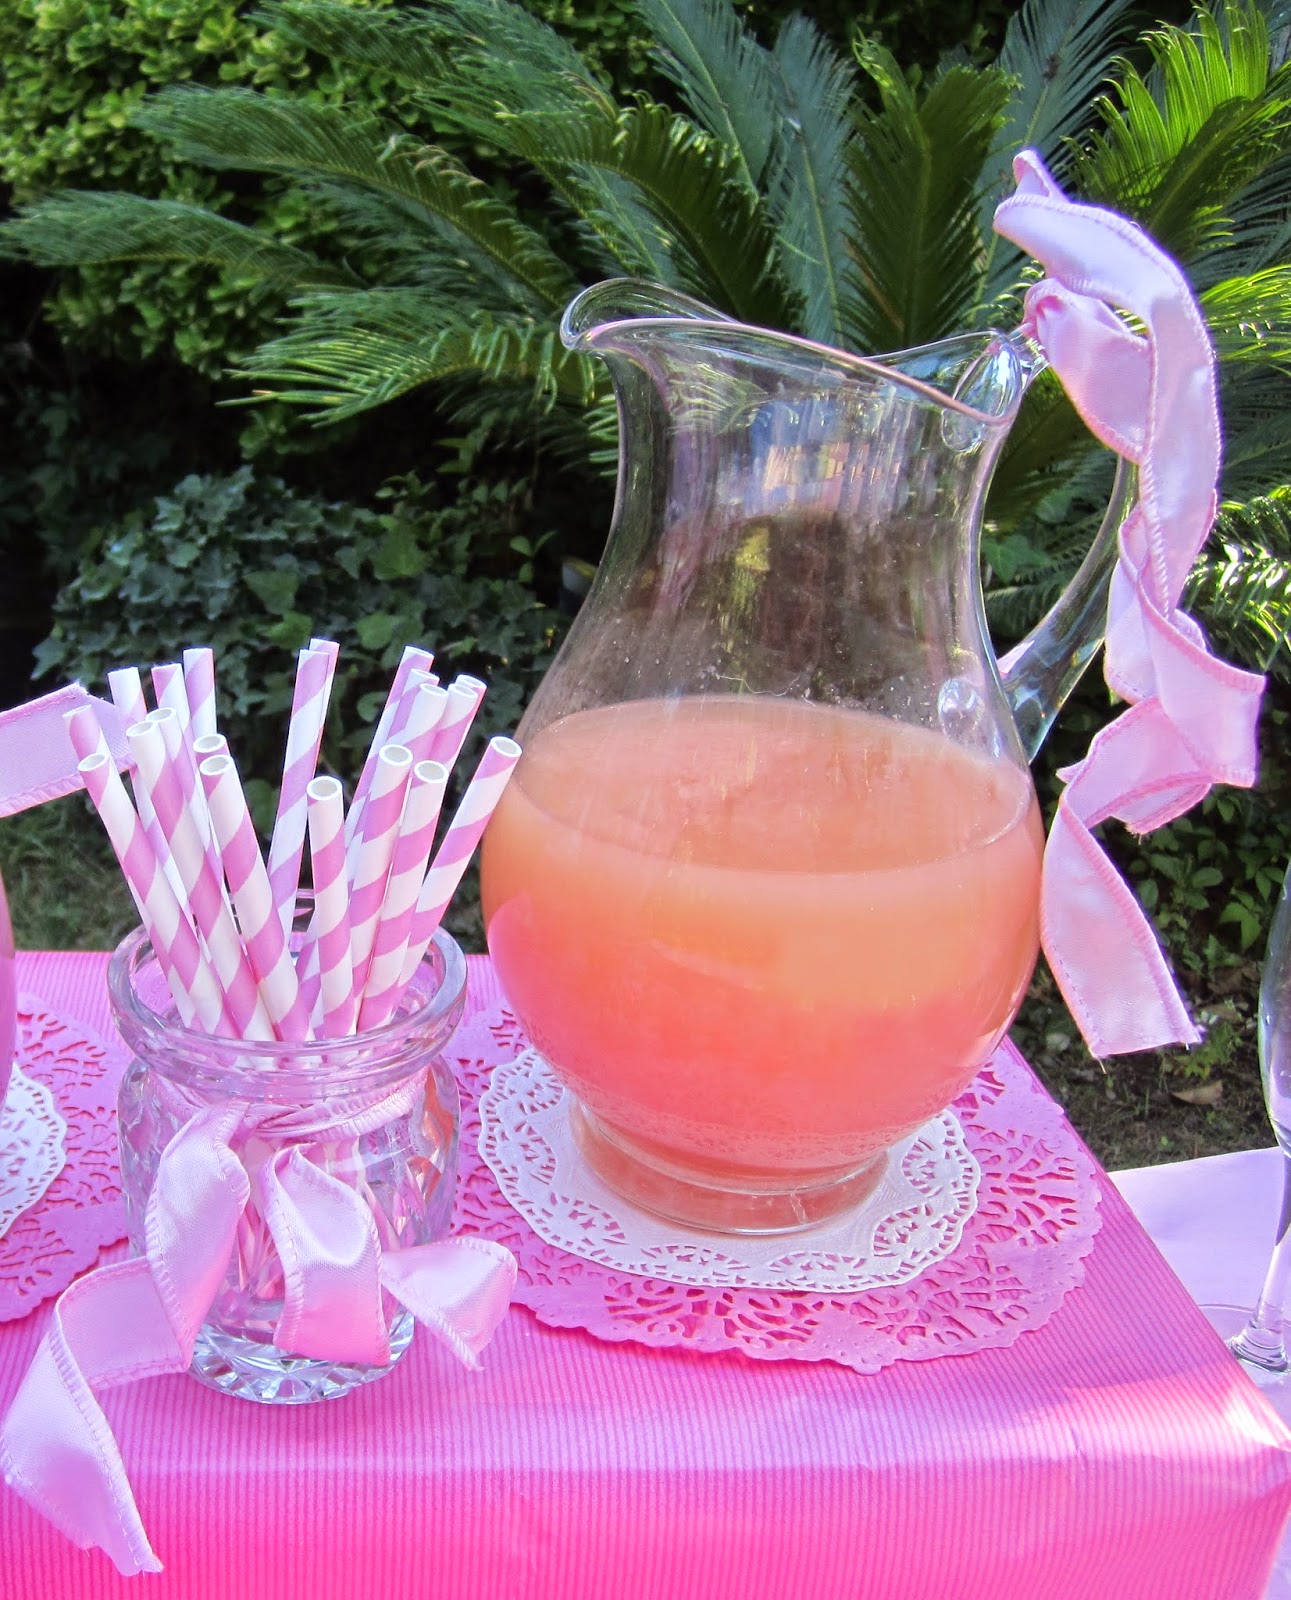 Mardefiesta: Pink lemonade